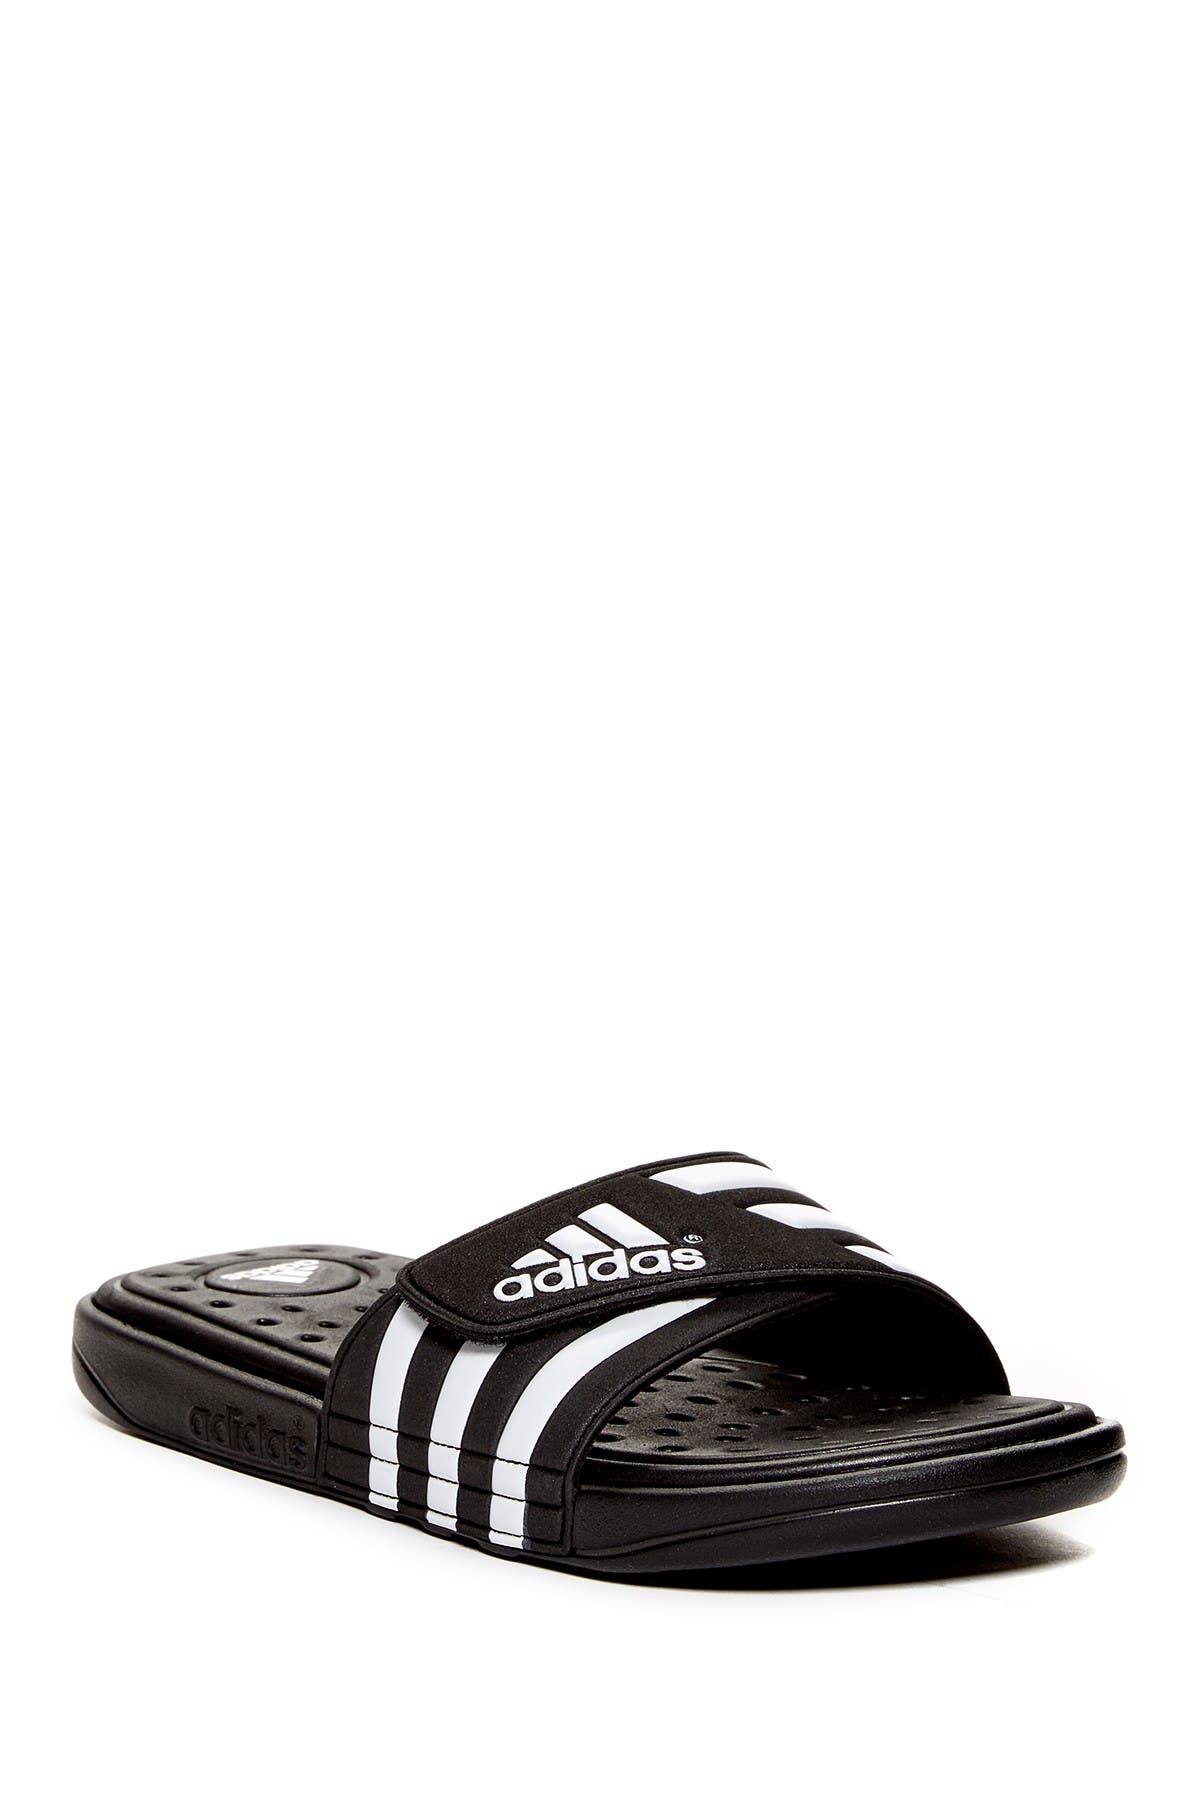 adidas | Adissage Slide Sandal 